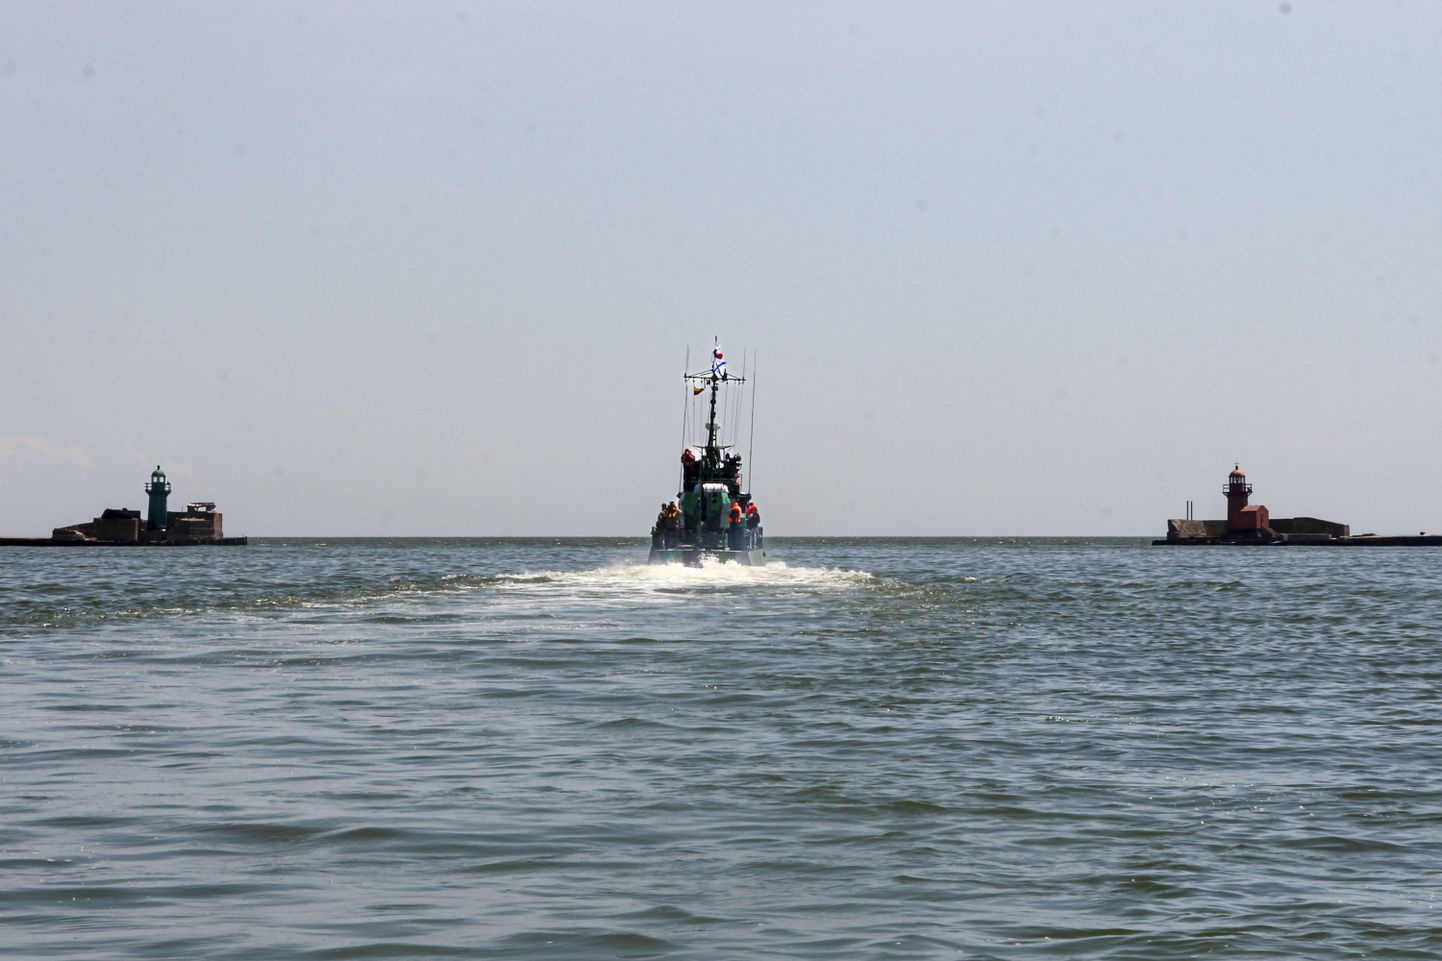 Venemaa mereväe patrull-laev Aasovi merel Mariupoli lähedal.  Ukraina sadamalinn Mariupol on Vene vägede kontrolli all. Foto on tehtud 30. mail 2022